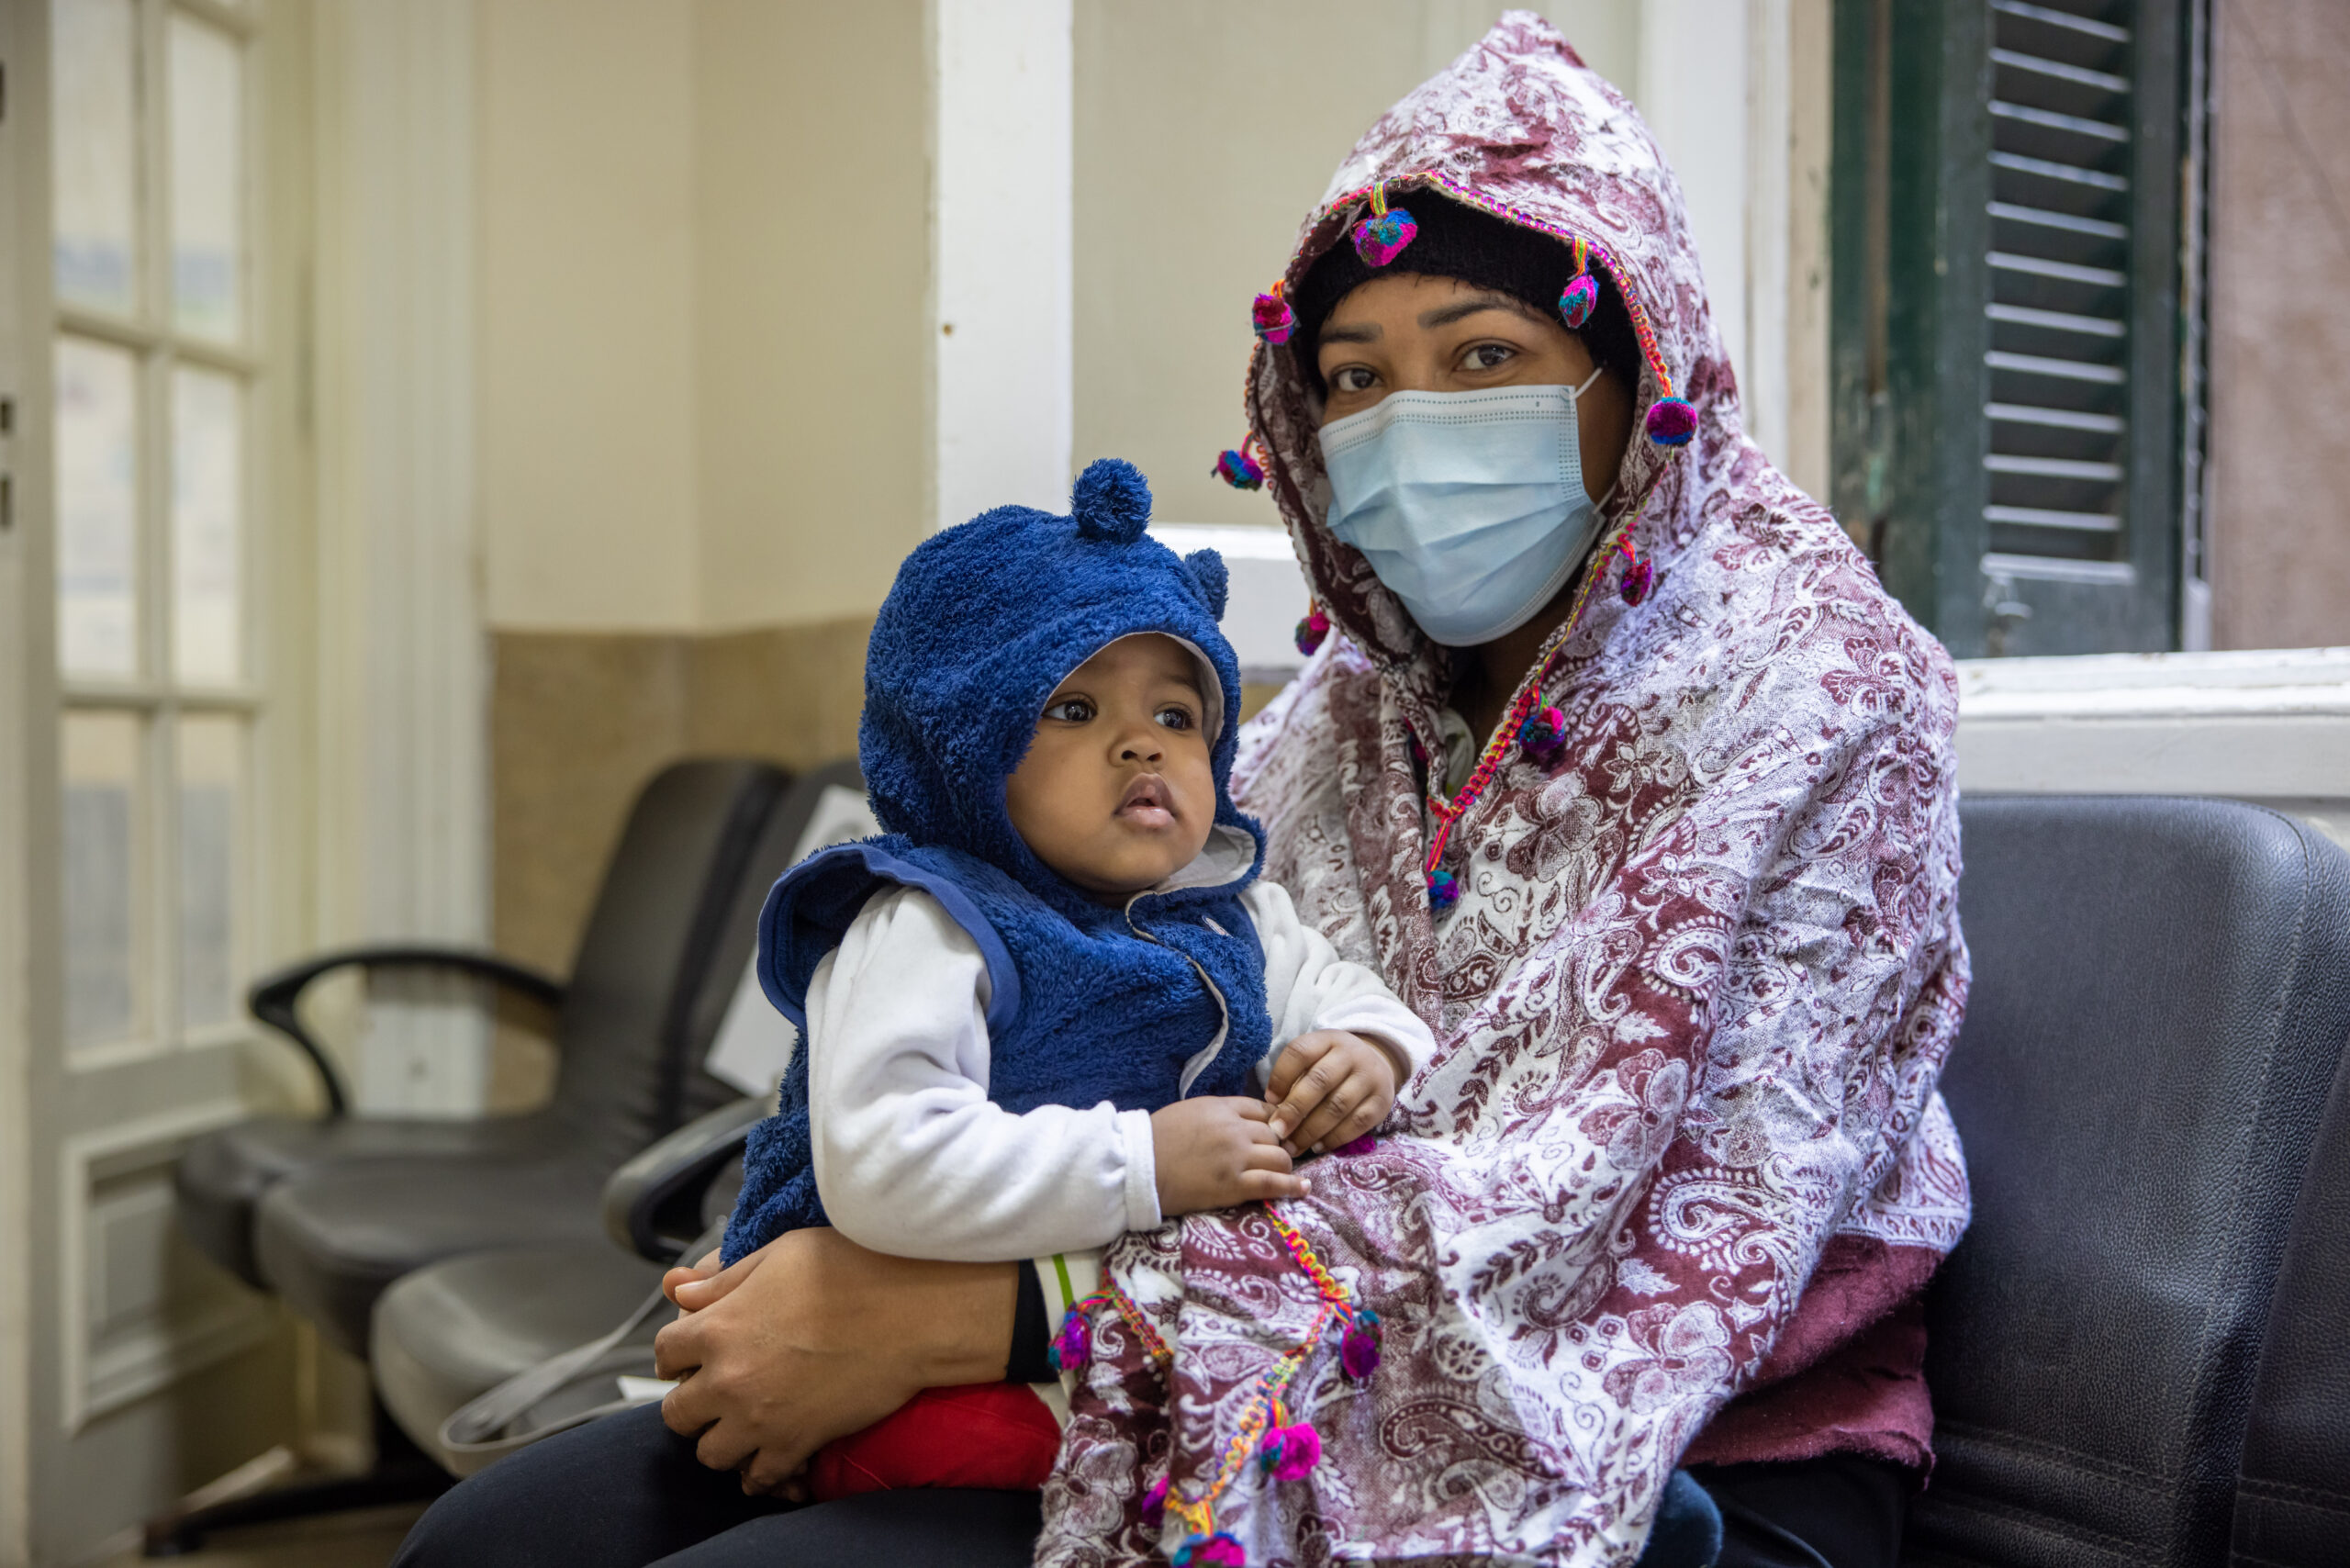 Mona et sa fille ont fui le Soudan et ont trouvé refuge en Égypte. Grâce au soutien du HCR et de l'Union européenne, cette mère soudanaise et son enfant en bas âge ont accès à des soins de santé en Égypte. HCR/Pedro Costa Gomes